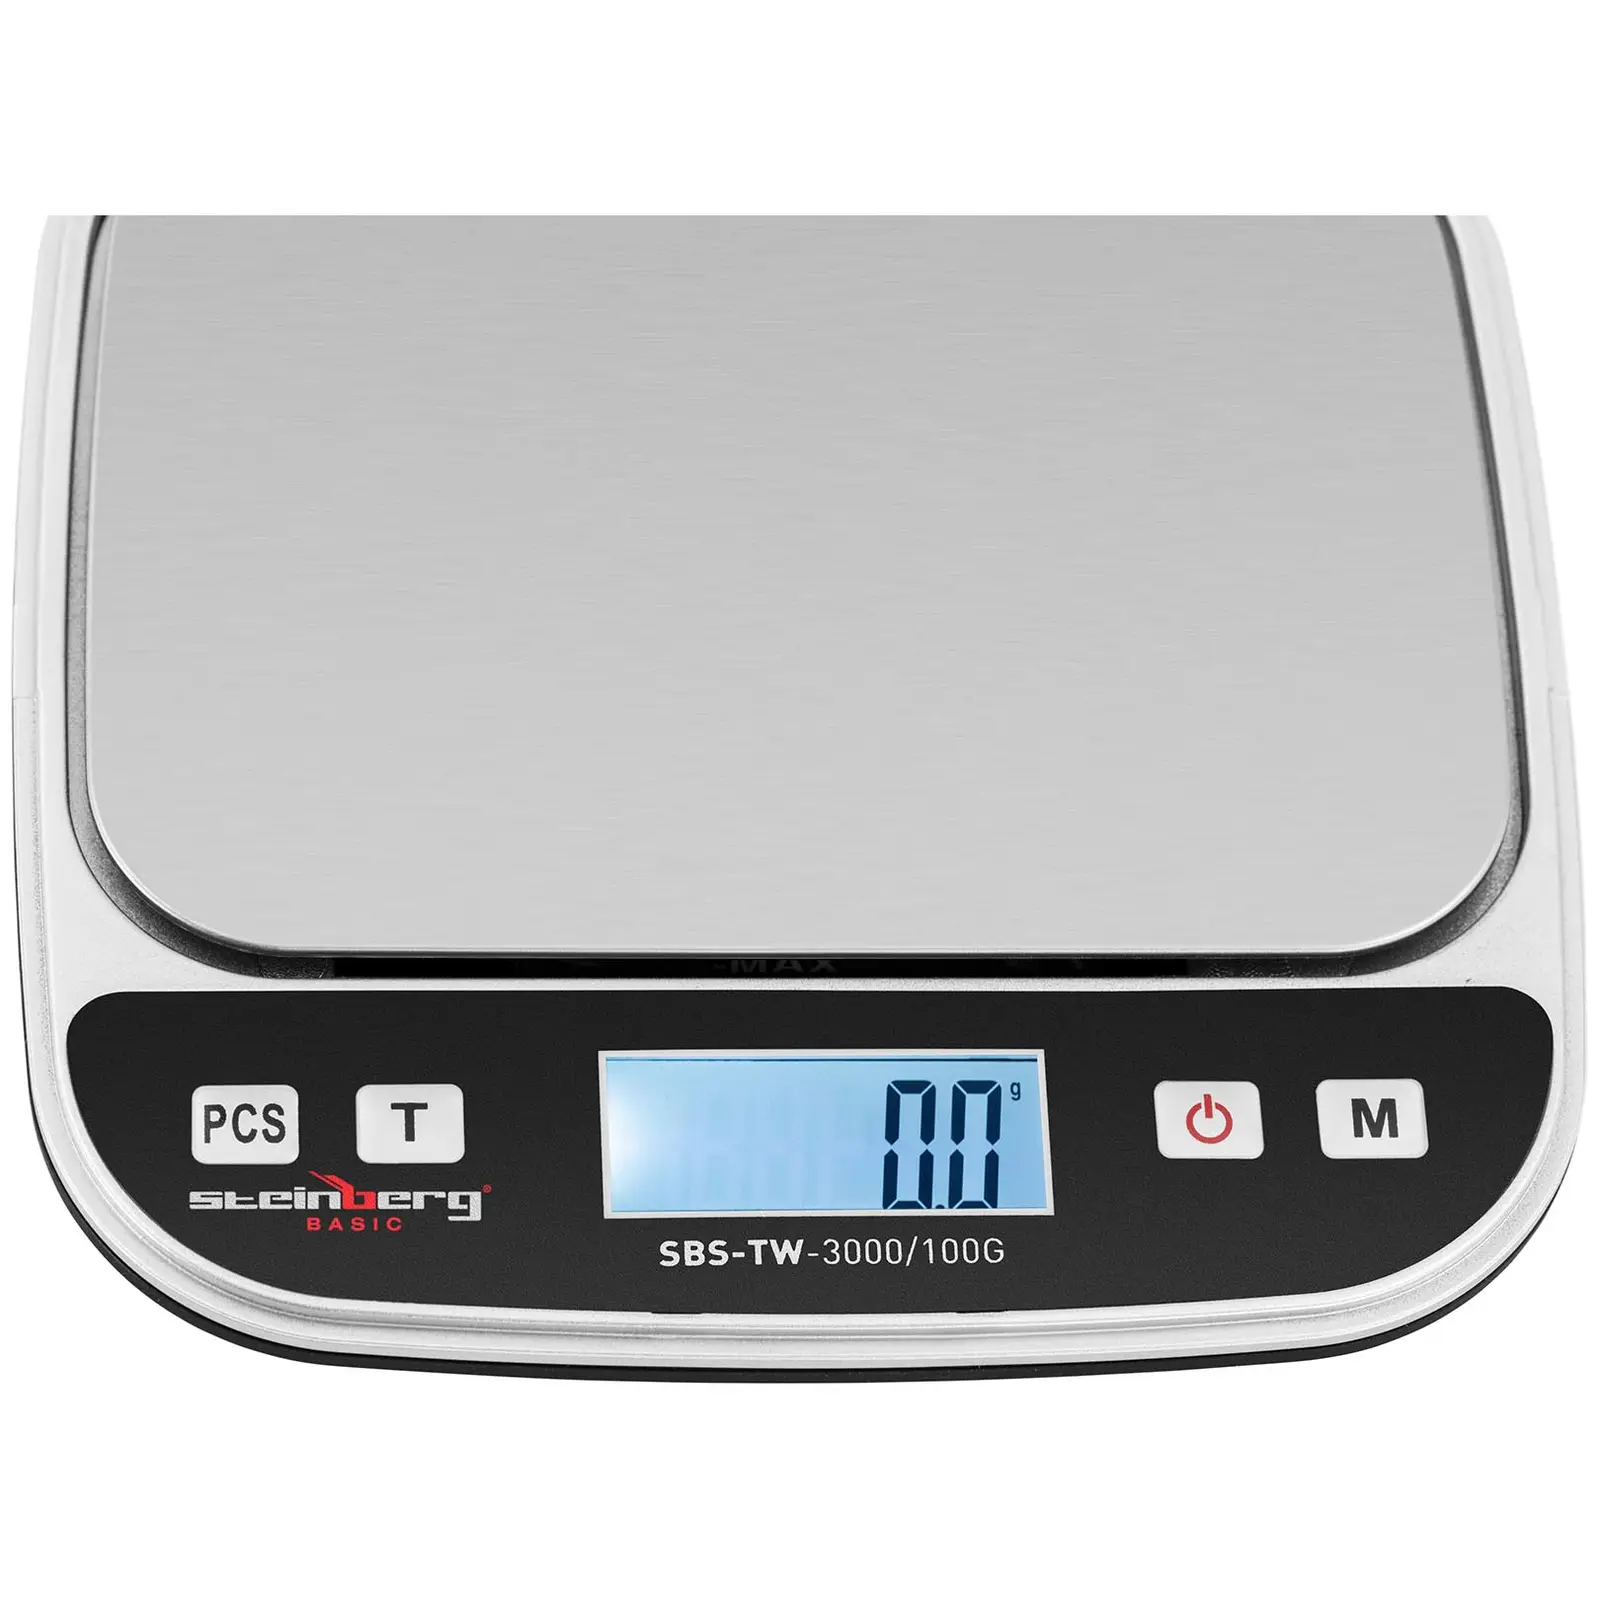 Bilancia da tavolo di precisione - digitale - 3 kg / 0,1 g